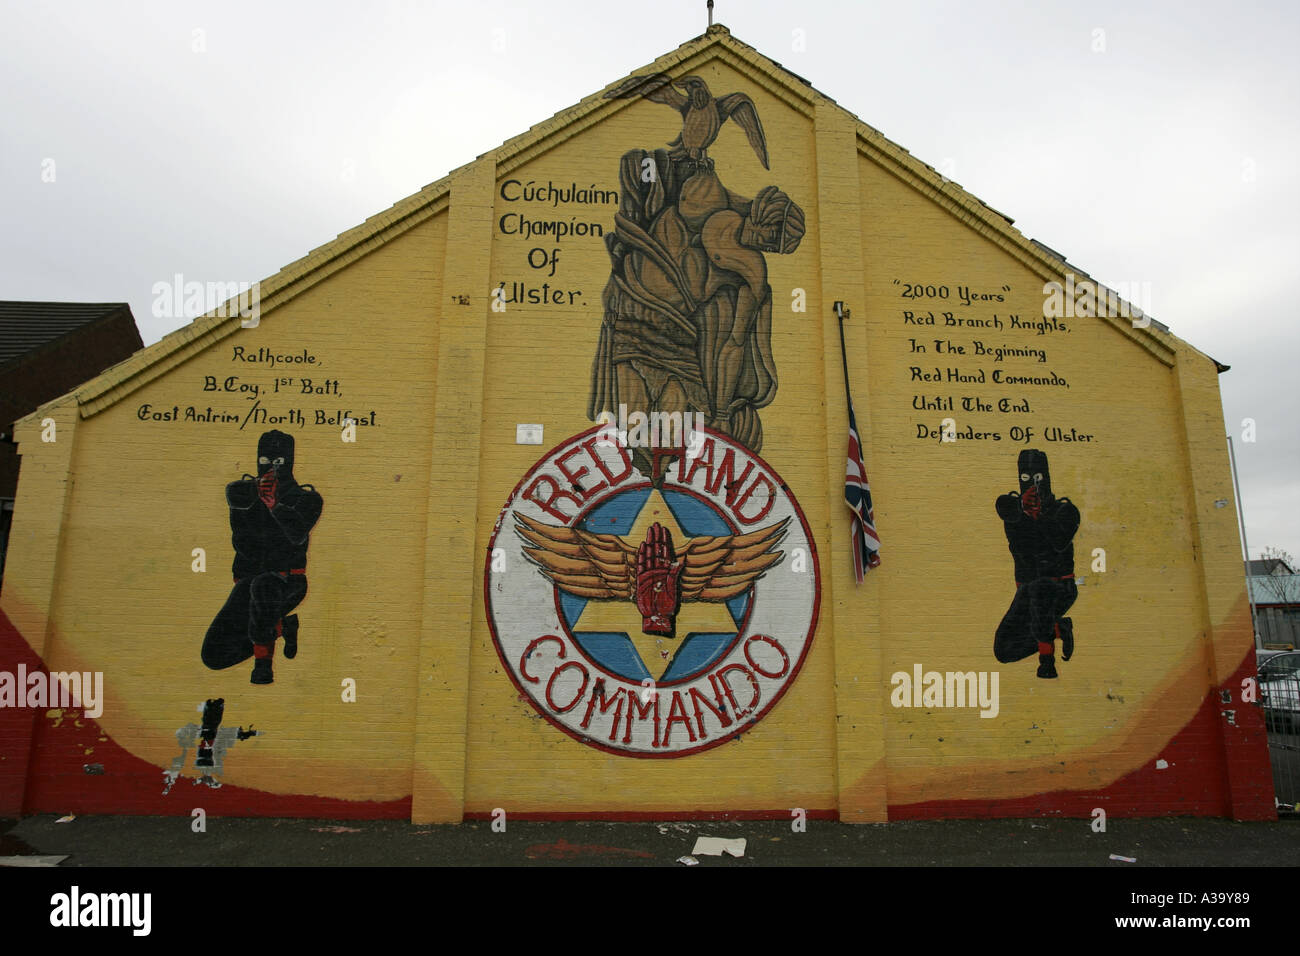 Cuchullain mano rossa commando terrorista lealisti carta murale rathcoole newtownabbey County Antrim Irlanda del Nord Foto Stock